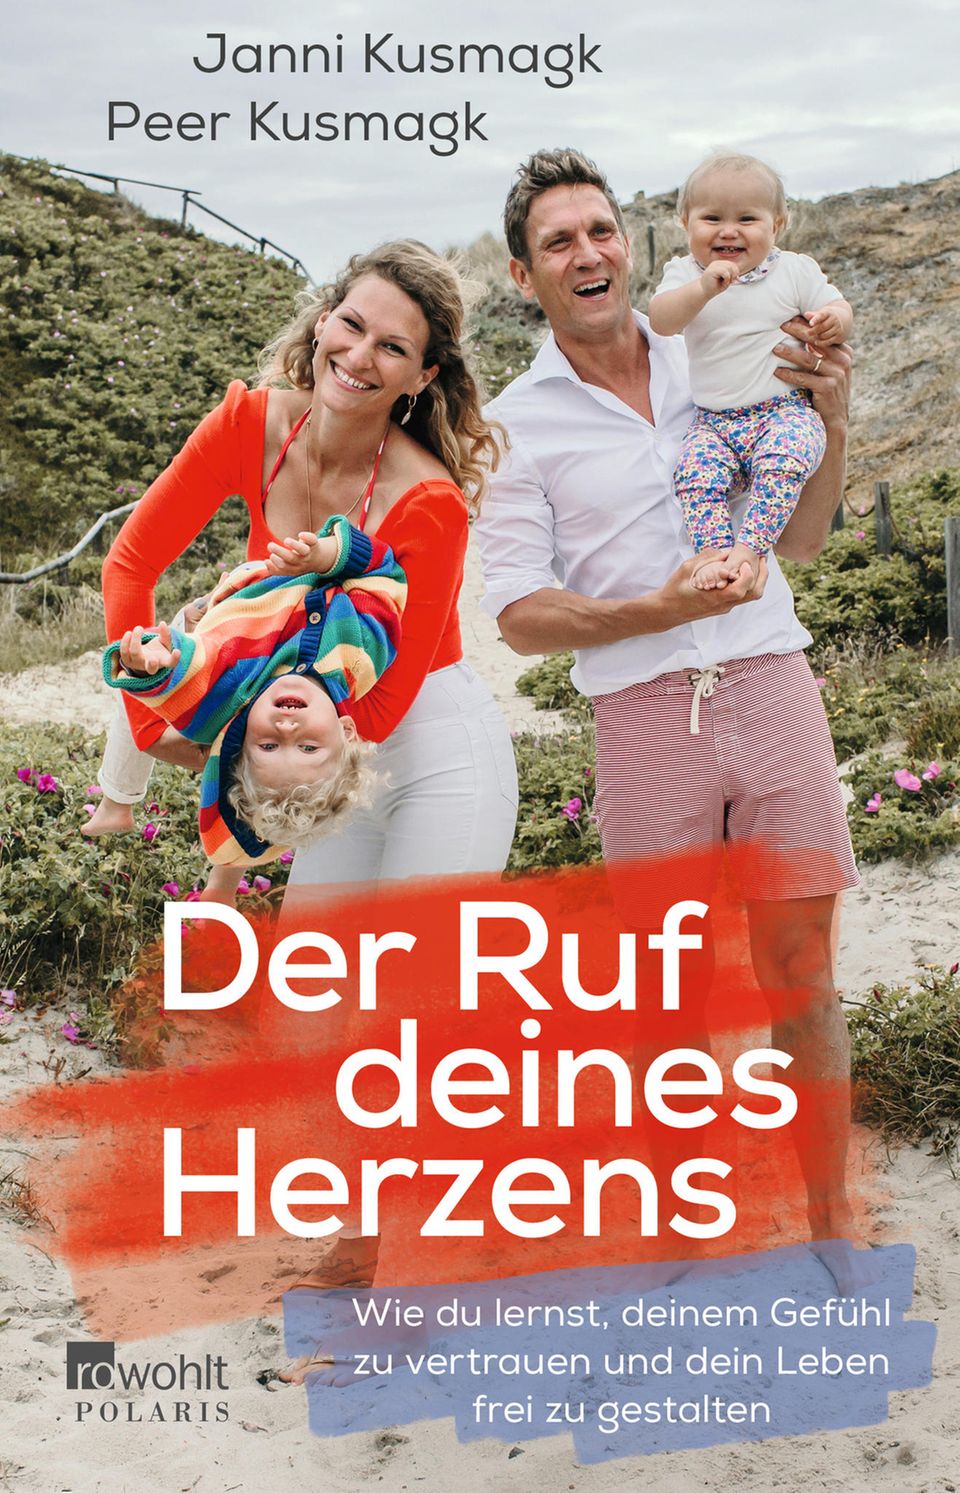 Janni und Peer Kusmagks erstes Buch "Der Ruf deines Herzens" ist am 22. März 2022 im Rowohlt Verlag erschienen. Der Ratgeber liefert konkrete Übungen, um sein Leben freier und glücklicher zu gestalten.